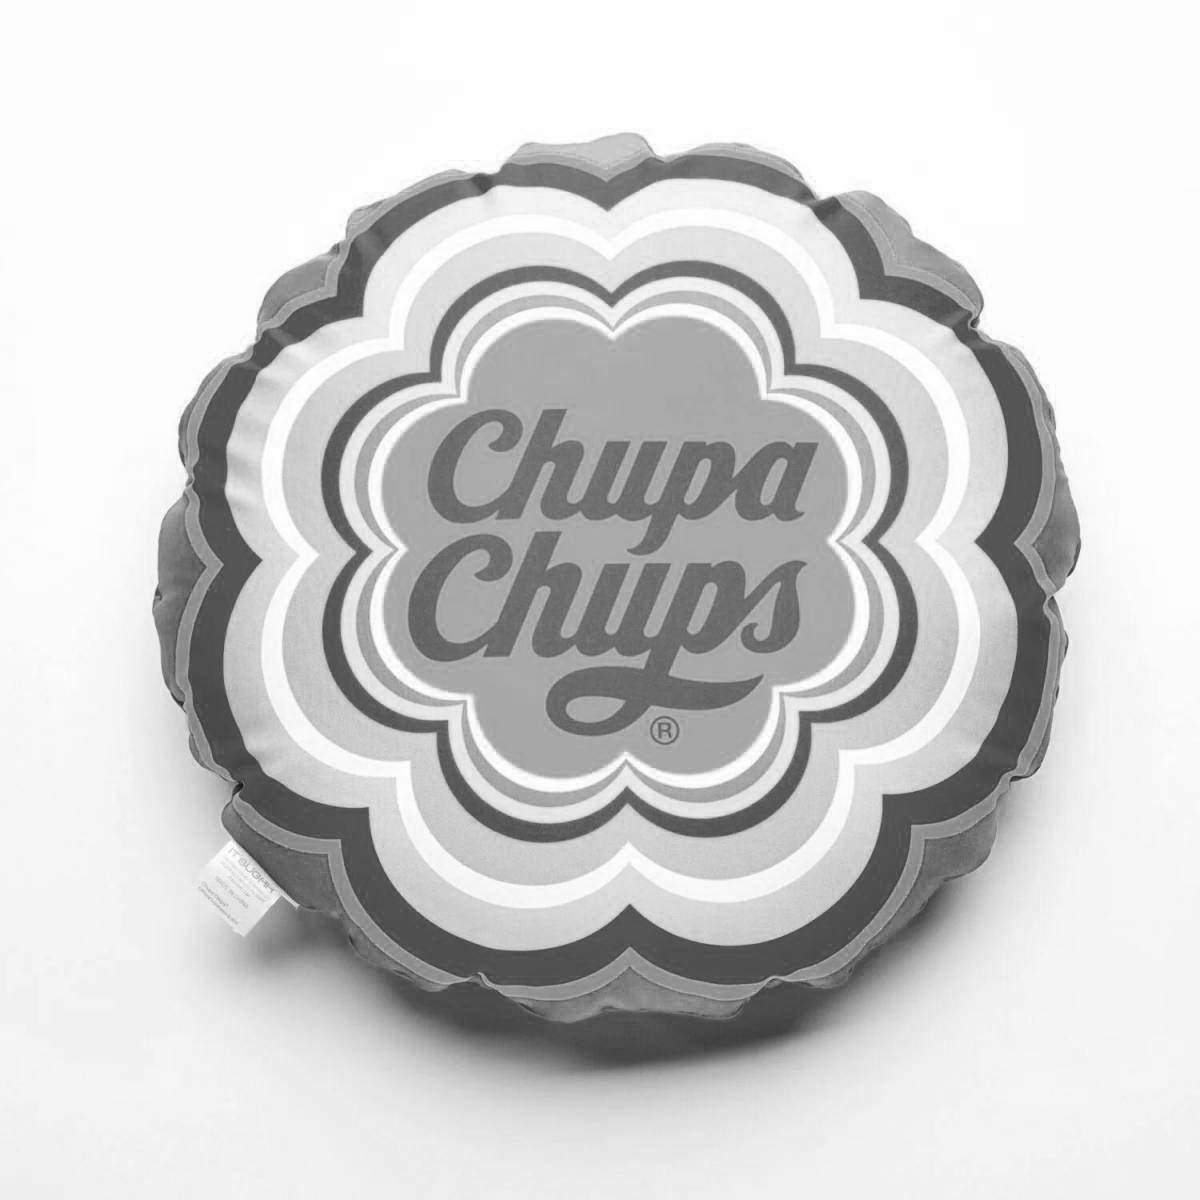 Charming coloring of the chupa chups logo